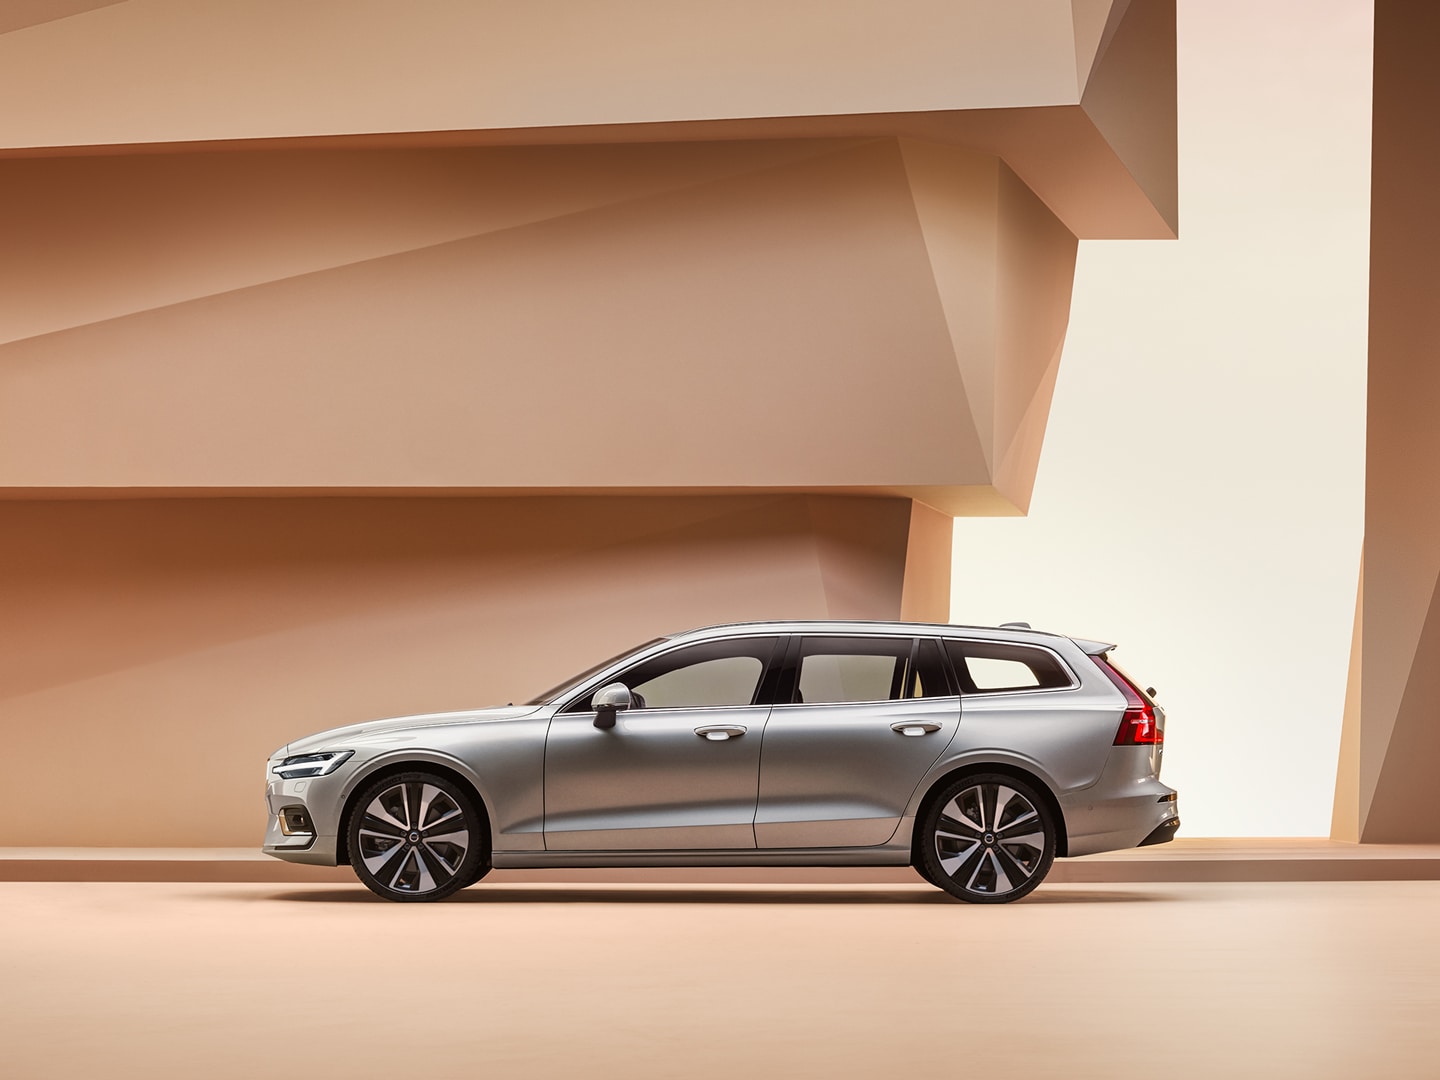 Zijaanzicht van een Volvo S90 die voor een grijze betonnen muur geparkeerd is.